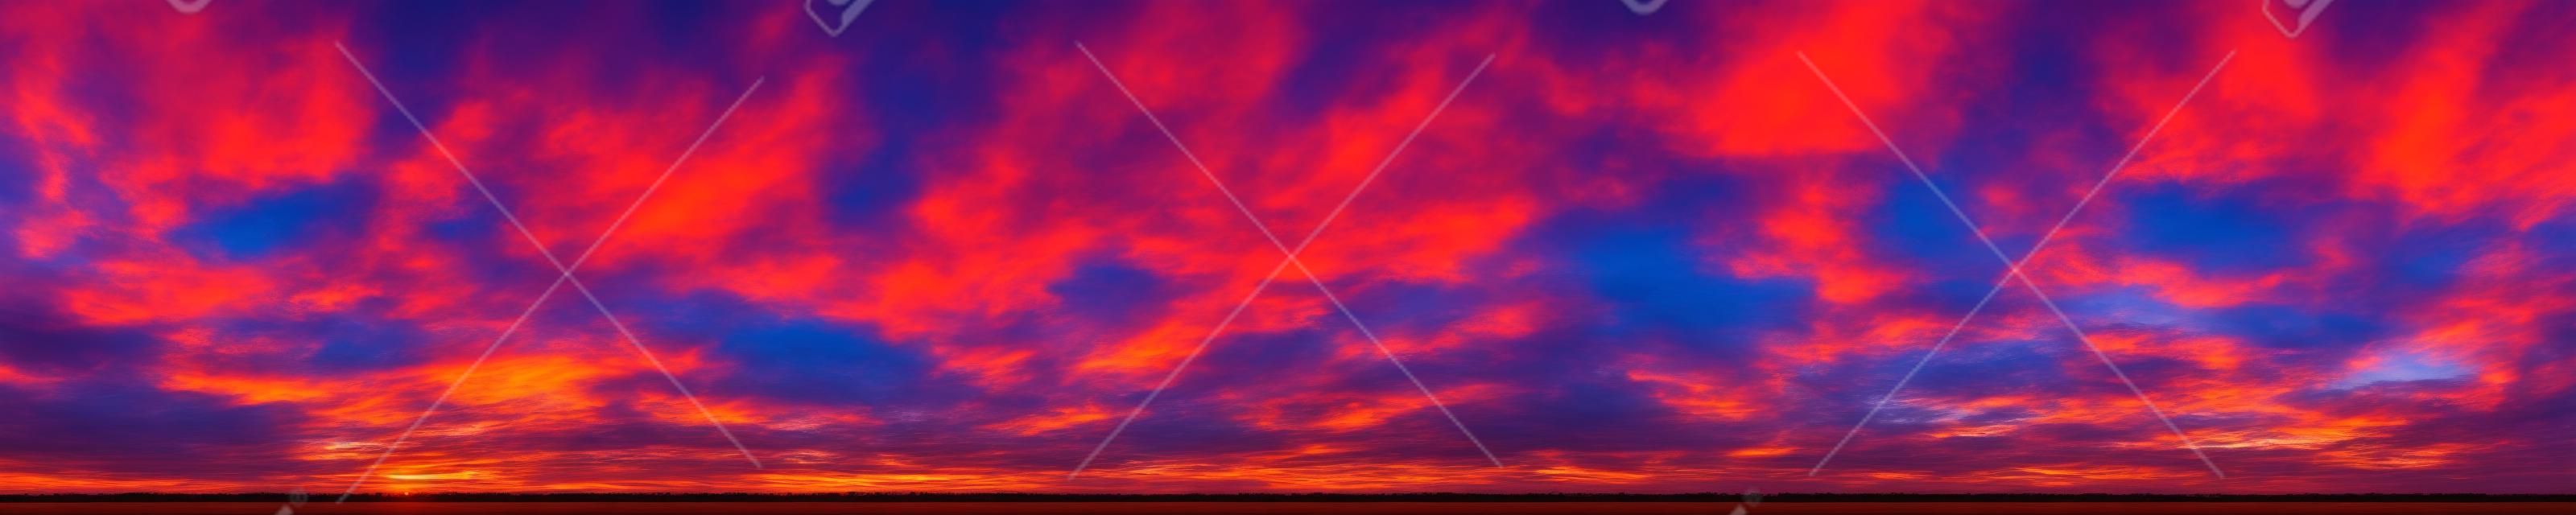 Panorama von dramatisch lebendigen Farben mit wunderschönen Wolken von Sonnenaufgang und Sonnenuntergang. Panoramabild.